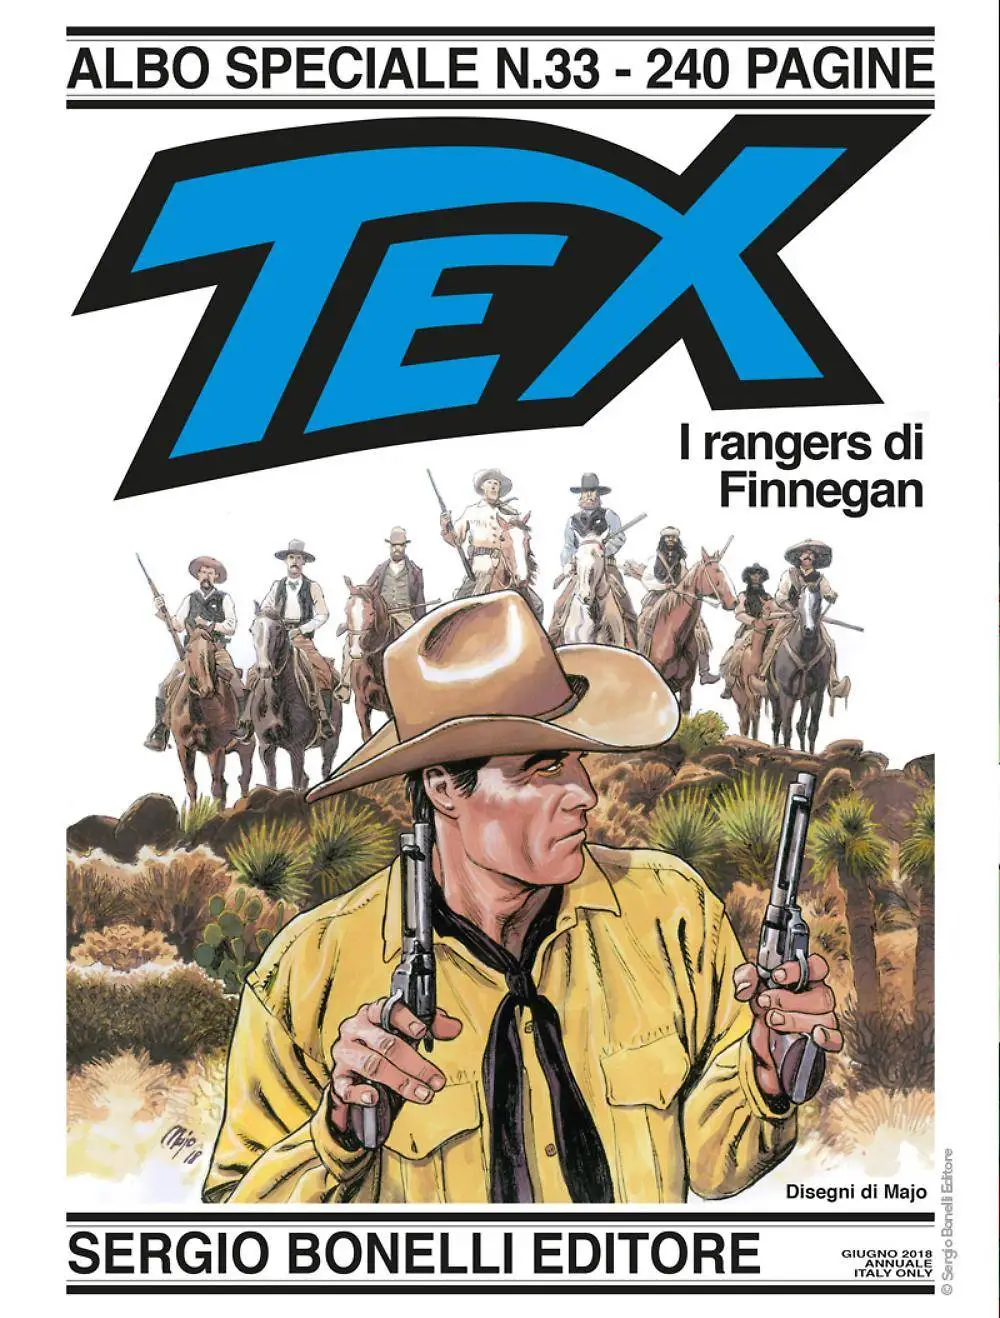 tex willer comics in english pdf